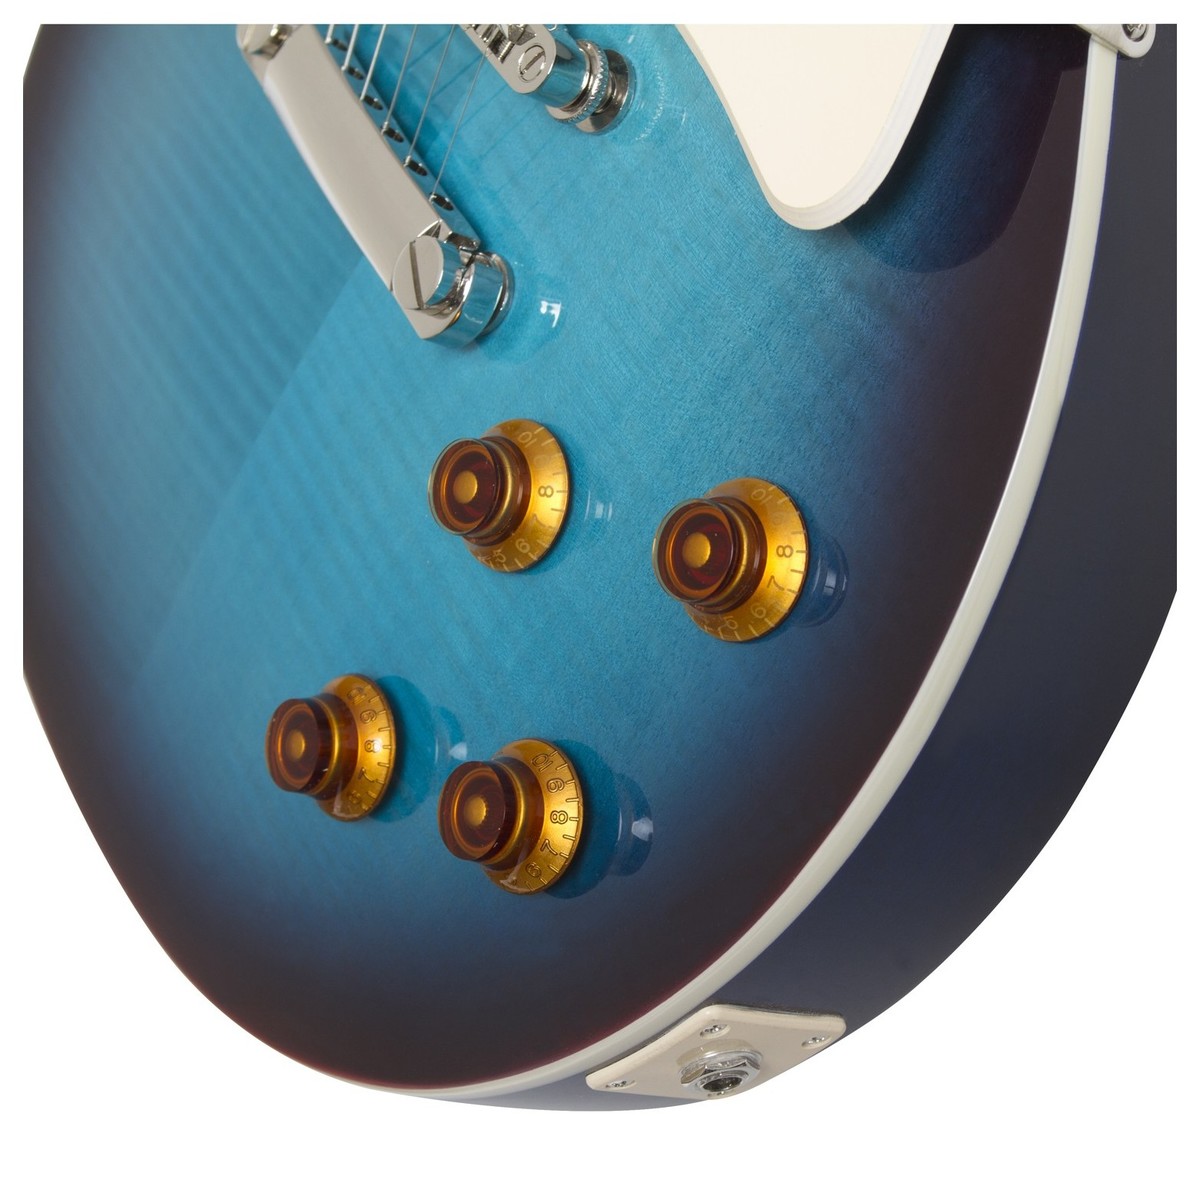 Epiphone Les Paul Standard Plus Top Pro Hh Ht Pf - Blueberry Burst - Single cut electric guitar - Variation 4